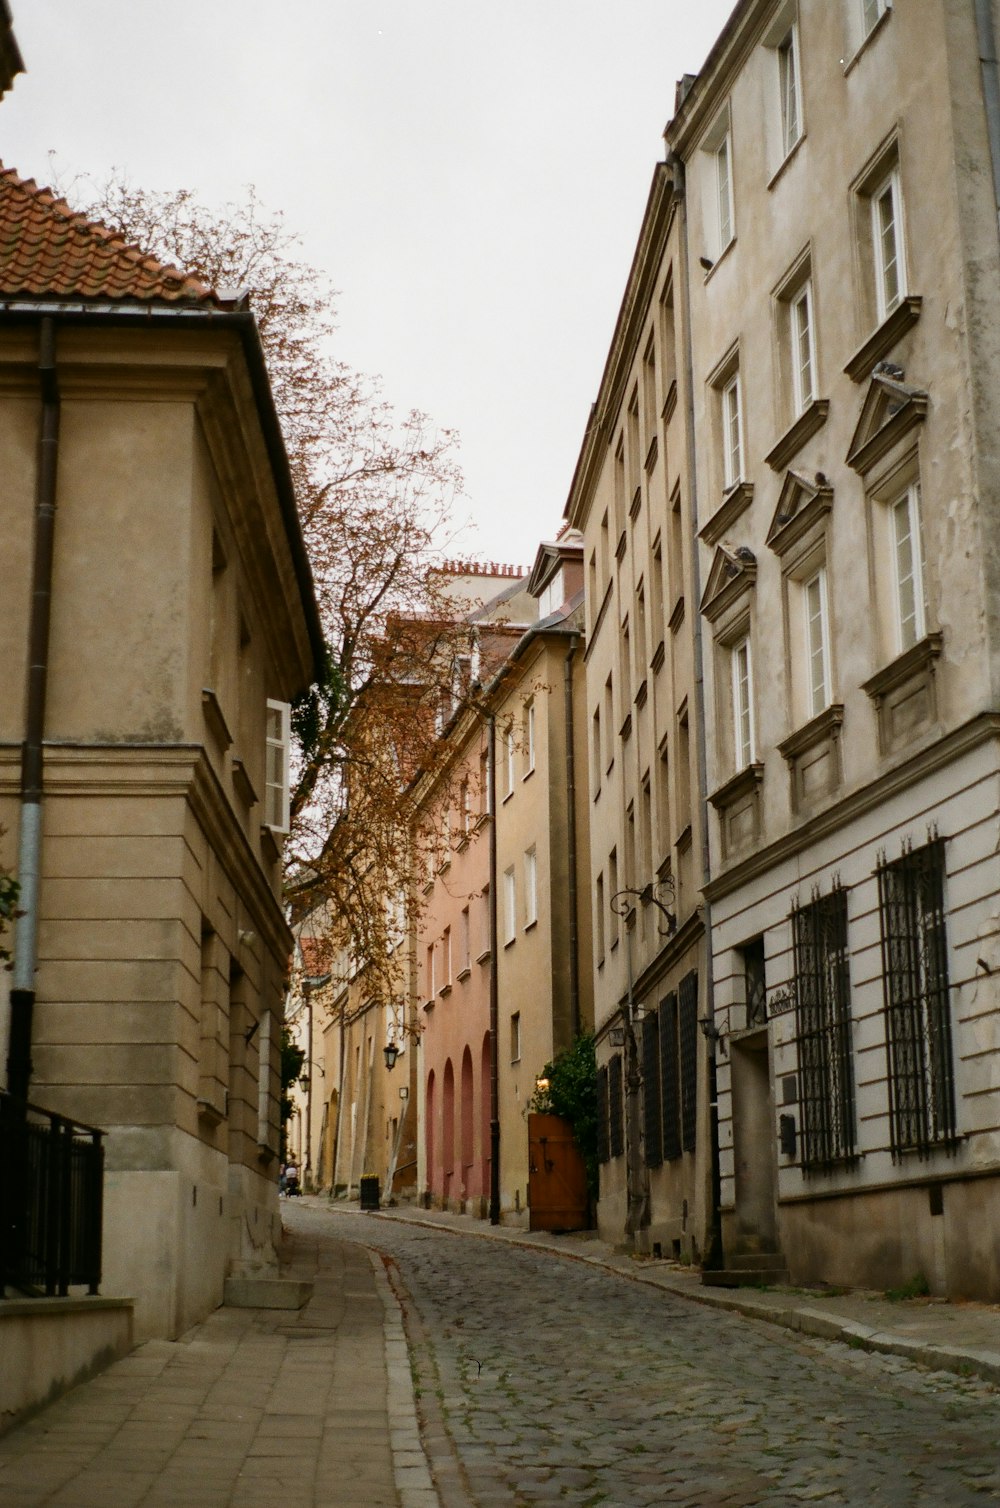 Uma rua de paralelepípedos em uma cidade europeia